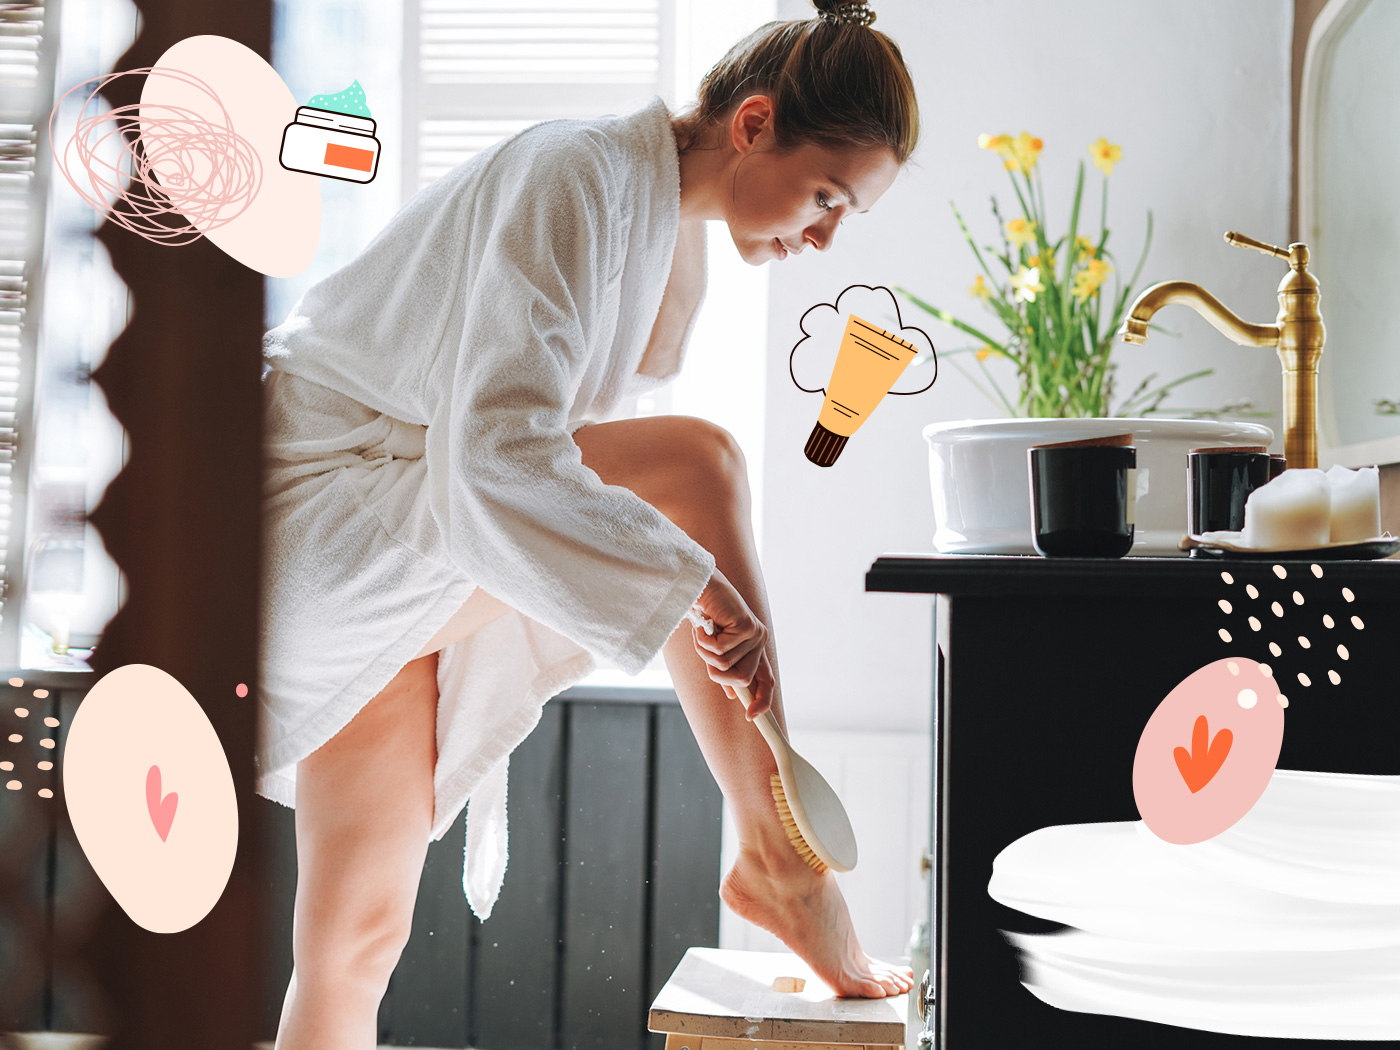 Περιποίησης σώματος: Τα νέα προϊόντα που παίρνουν την πρώτη θέση στο μπάνιο σου